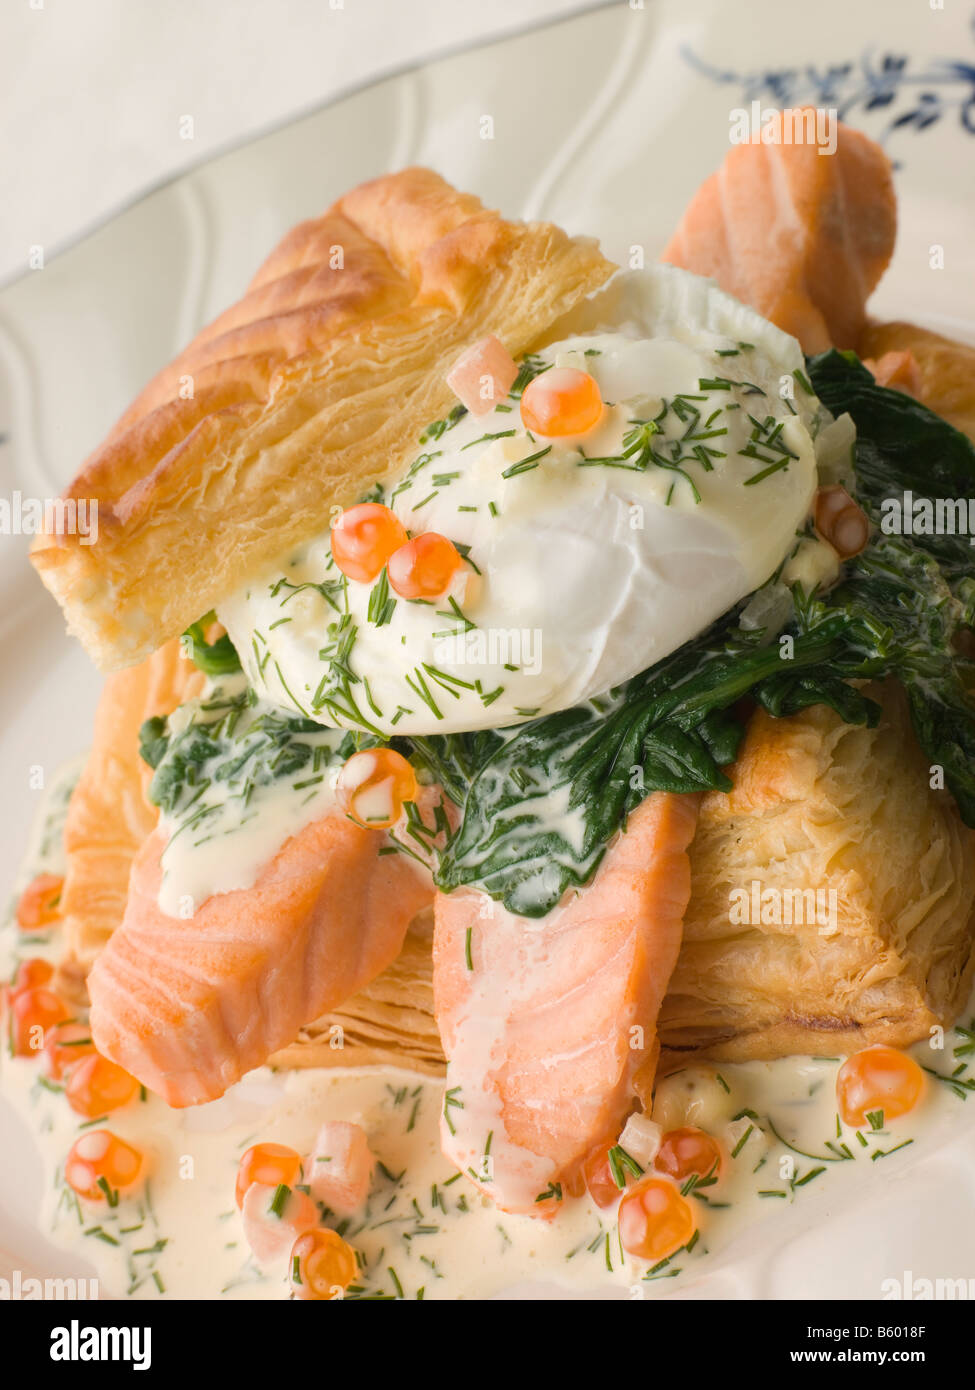 Épinards saumon poêlé et un oeuf poché dans un vol-au-Vent Cas avec une sauce à l'aneth et Caviar Keta Banque D'Images